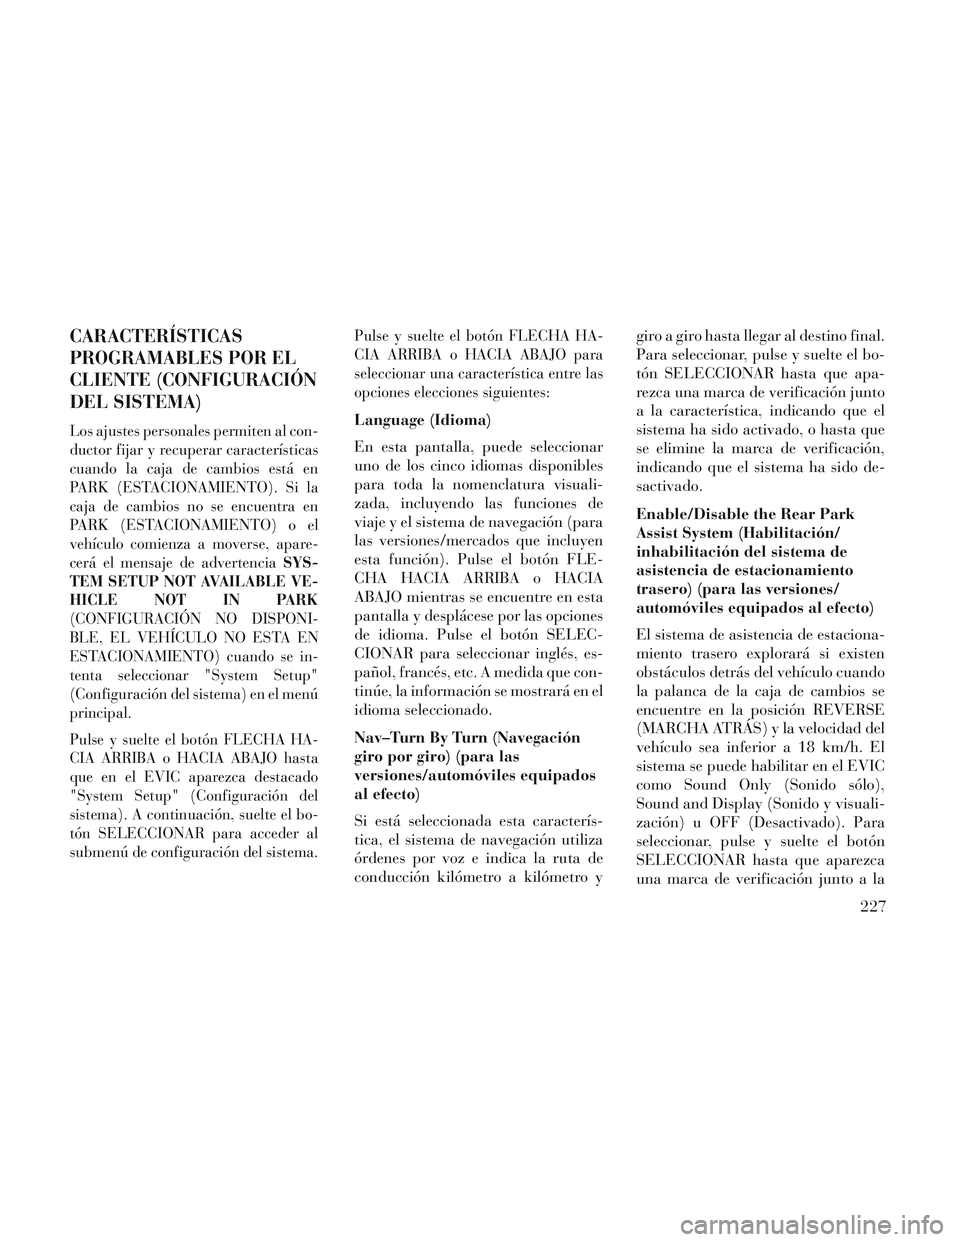 Lancia Voyager 2014  Manual de Empleo y Cuidado (in Spanish) CARACTERÍSTICAS
PROGRAMABLES POR EL
CLIENTE (CONFIGURACIÓN
DEL SISTEMA)
Los ajustes personales permiten al con-
ductor fijar y recuperar características
cuando la caja de cambios está en
PARK (EST